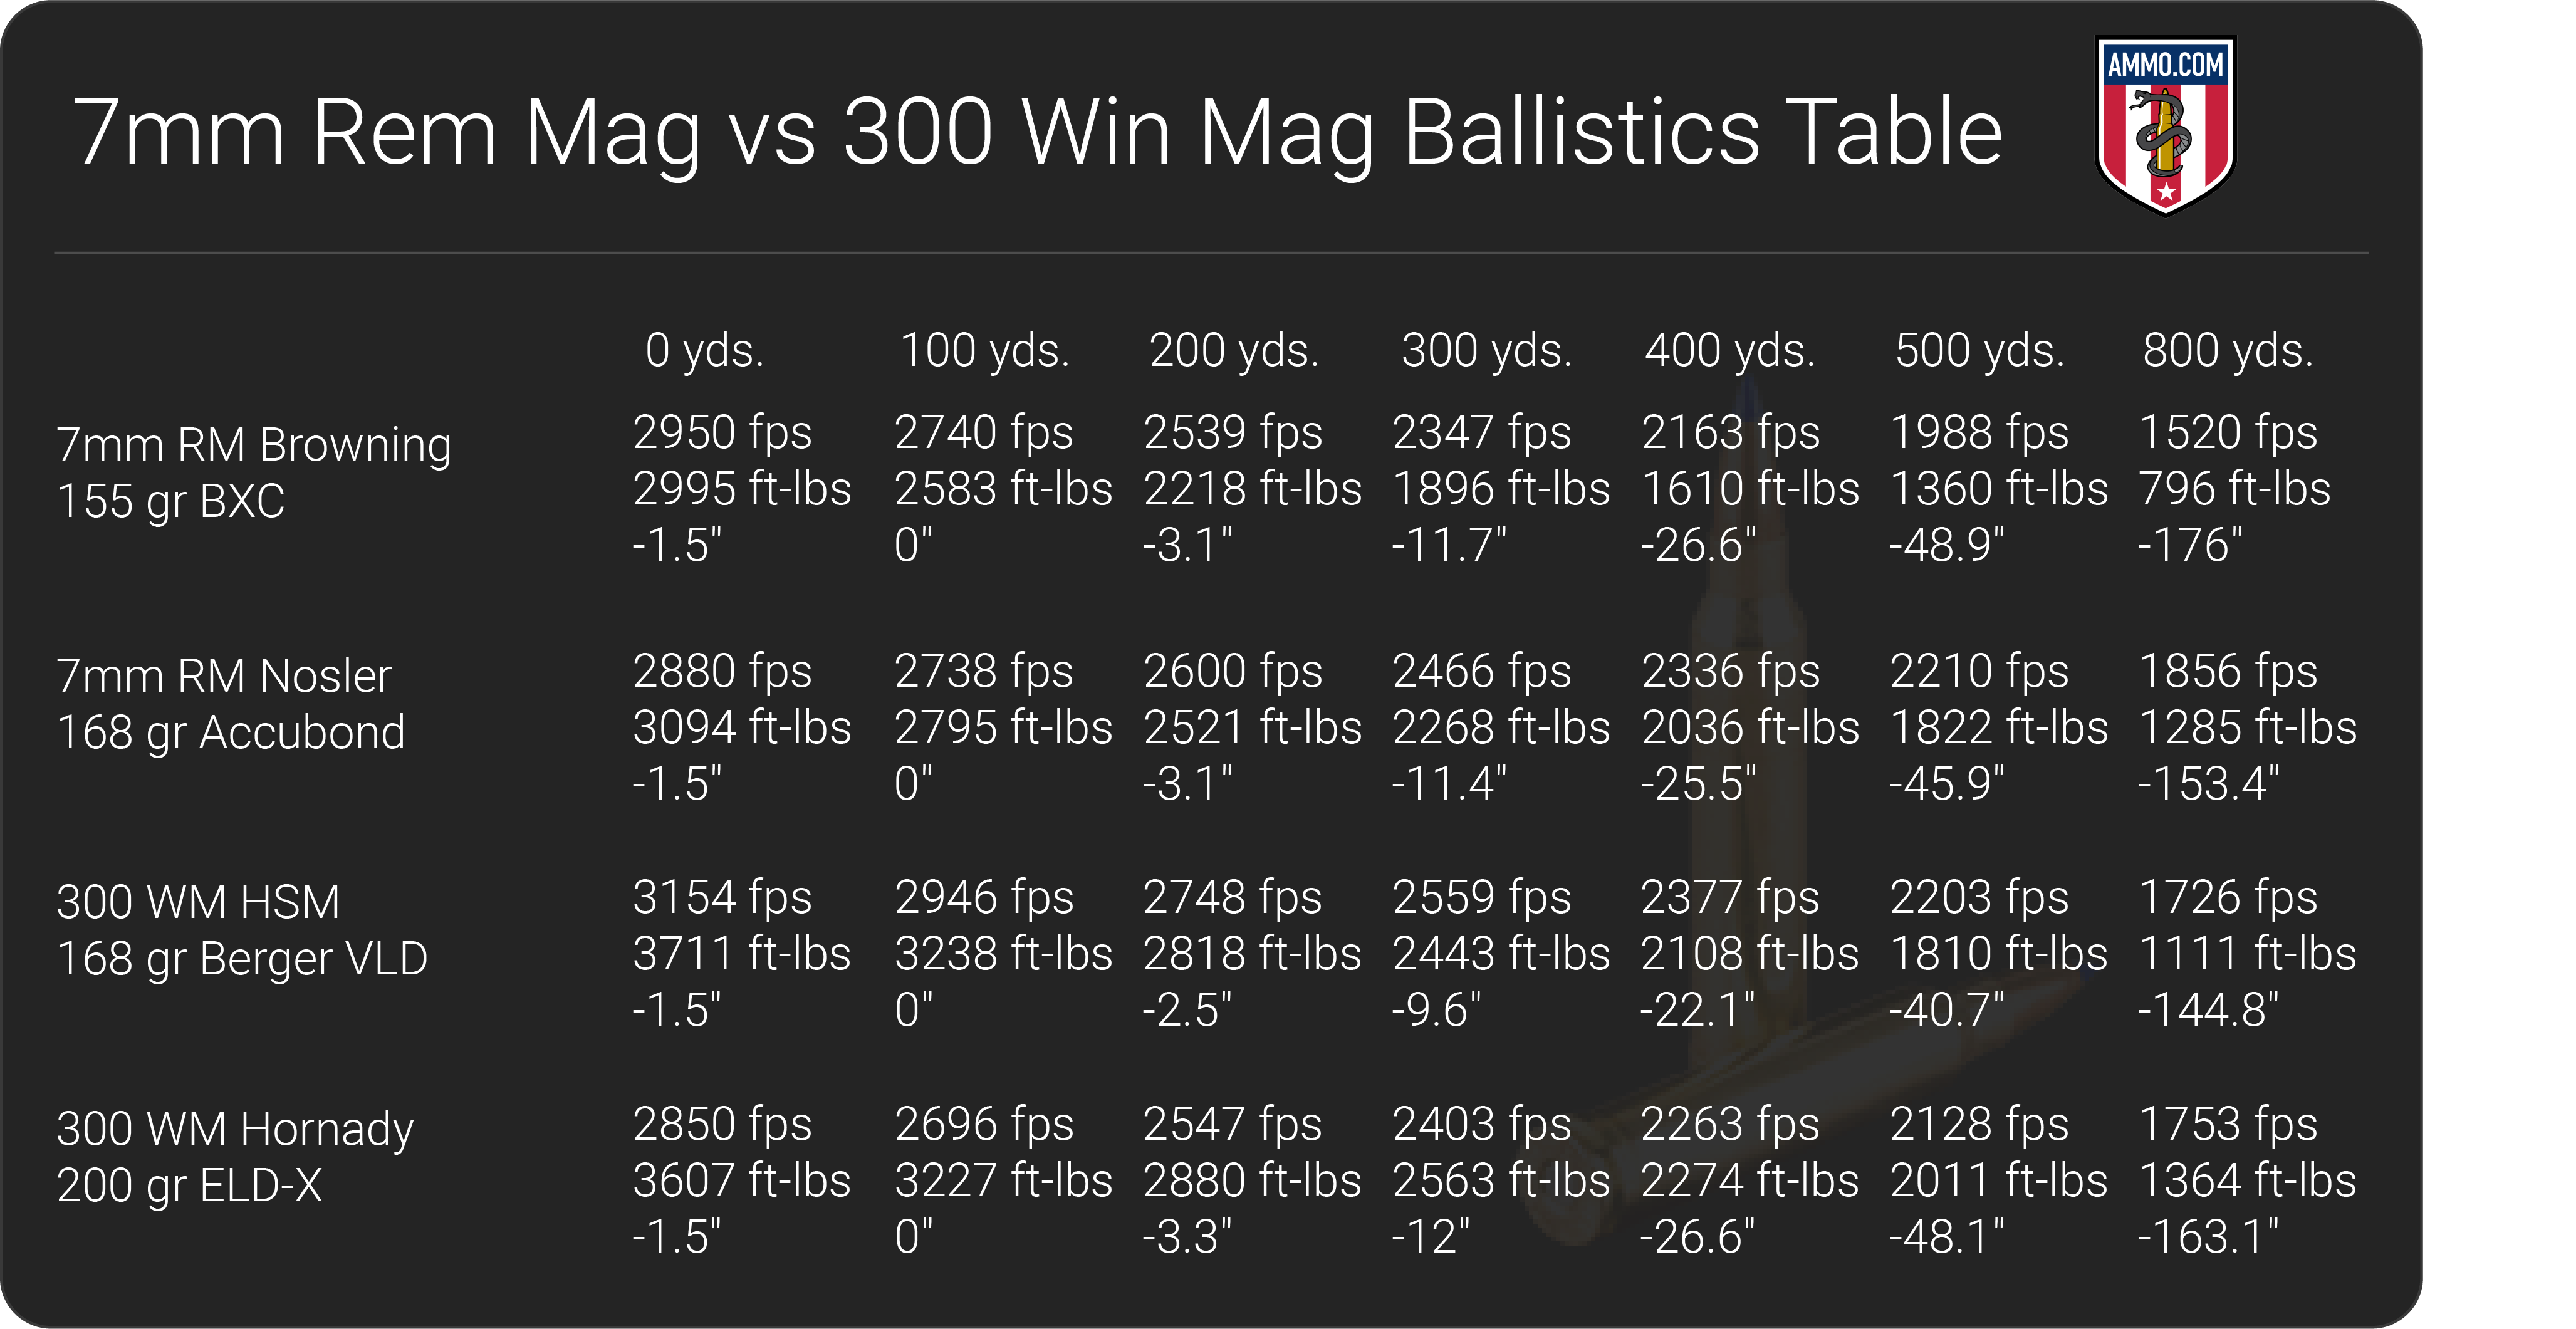 7mm Rem Mag vs 300 Win Mag ballistics table